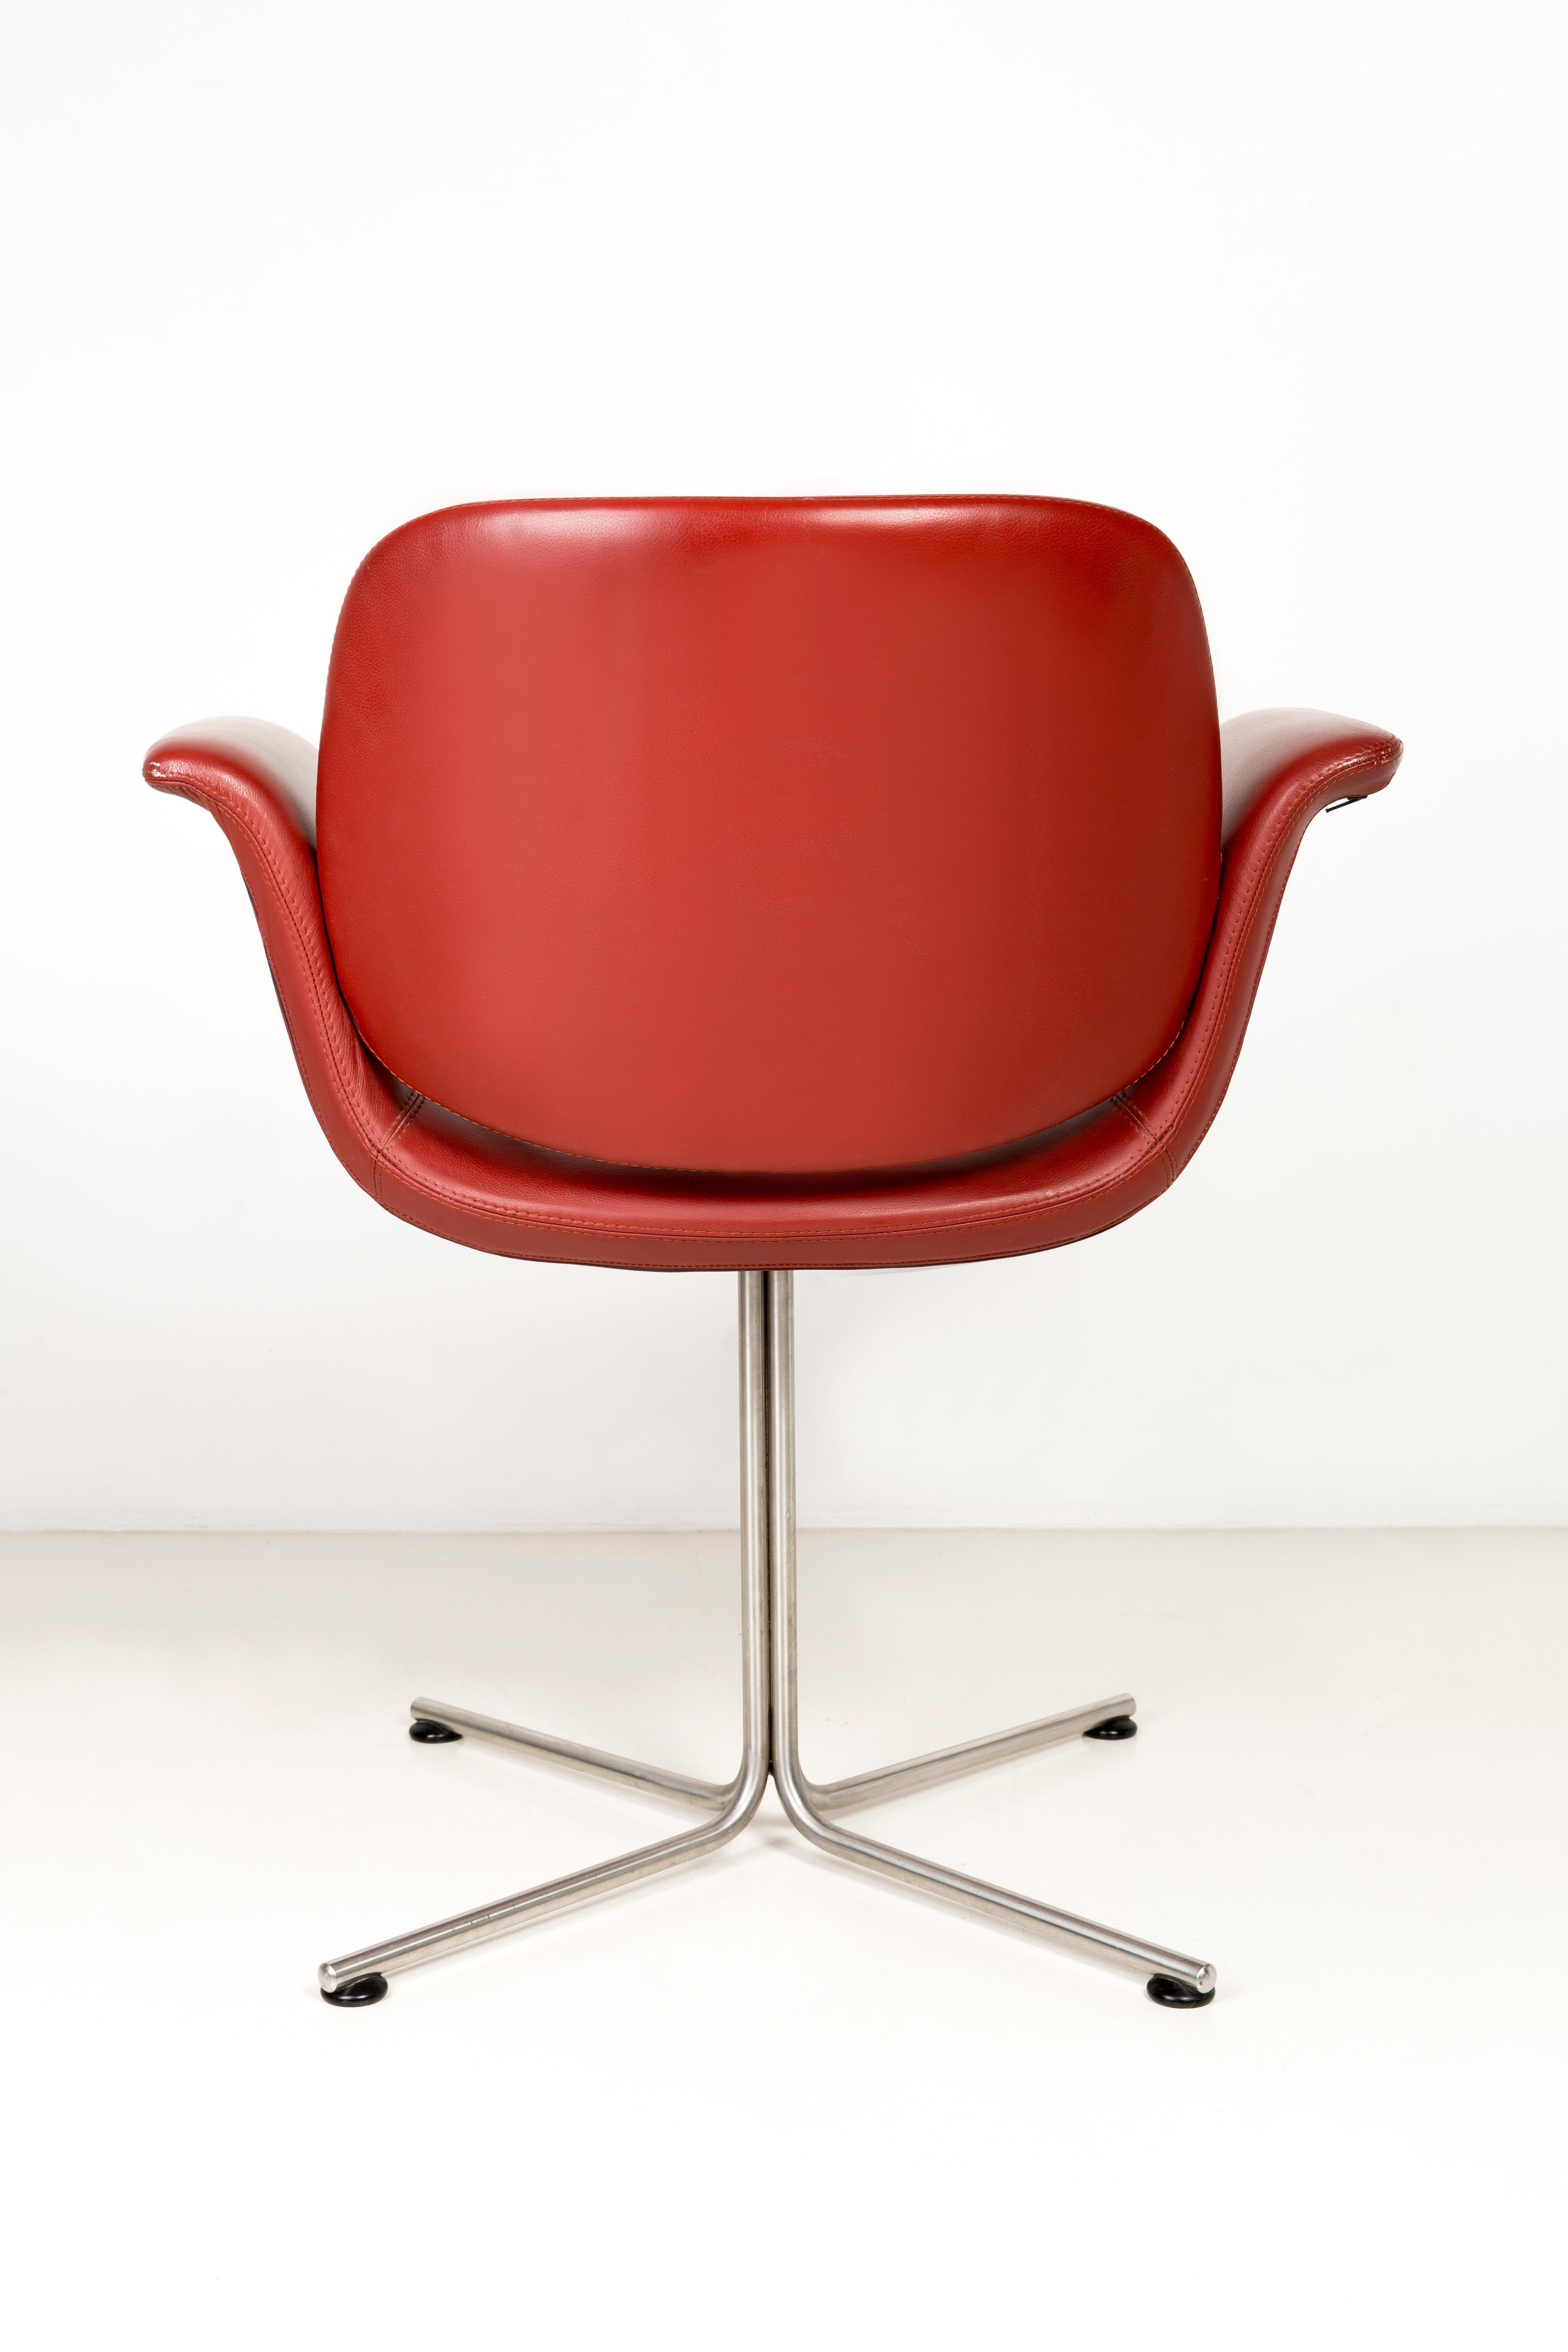 Danish Unique Flamingo Chair, Red Leather, Erik Jørgensen, 2000s, Denmark